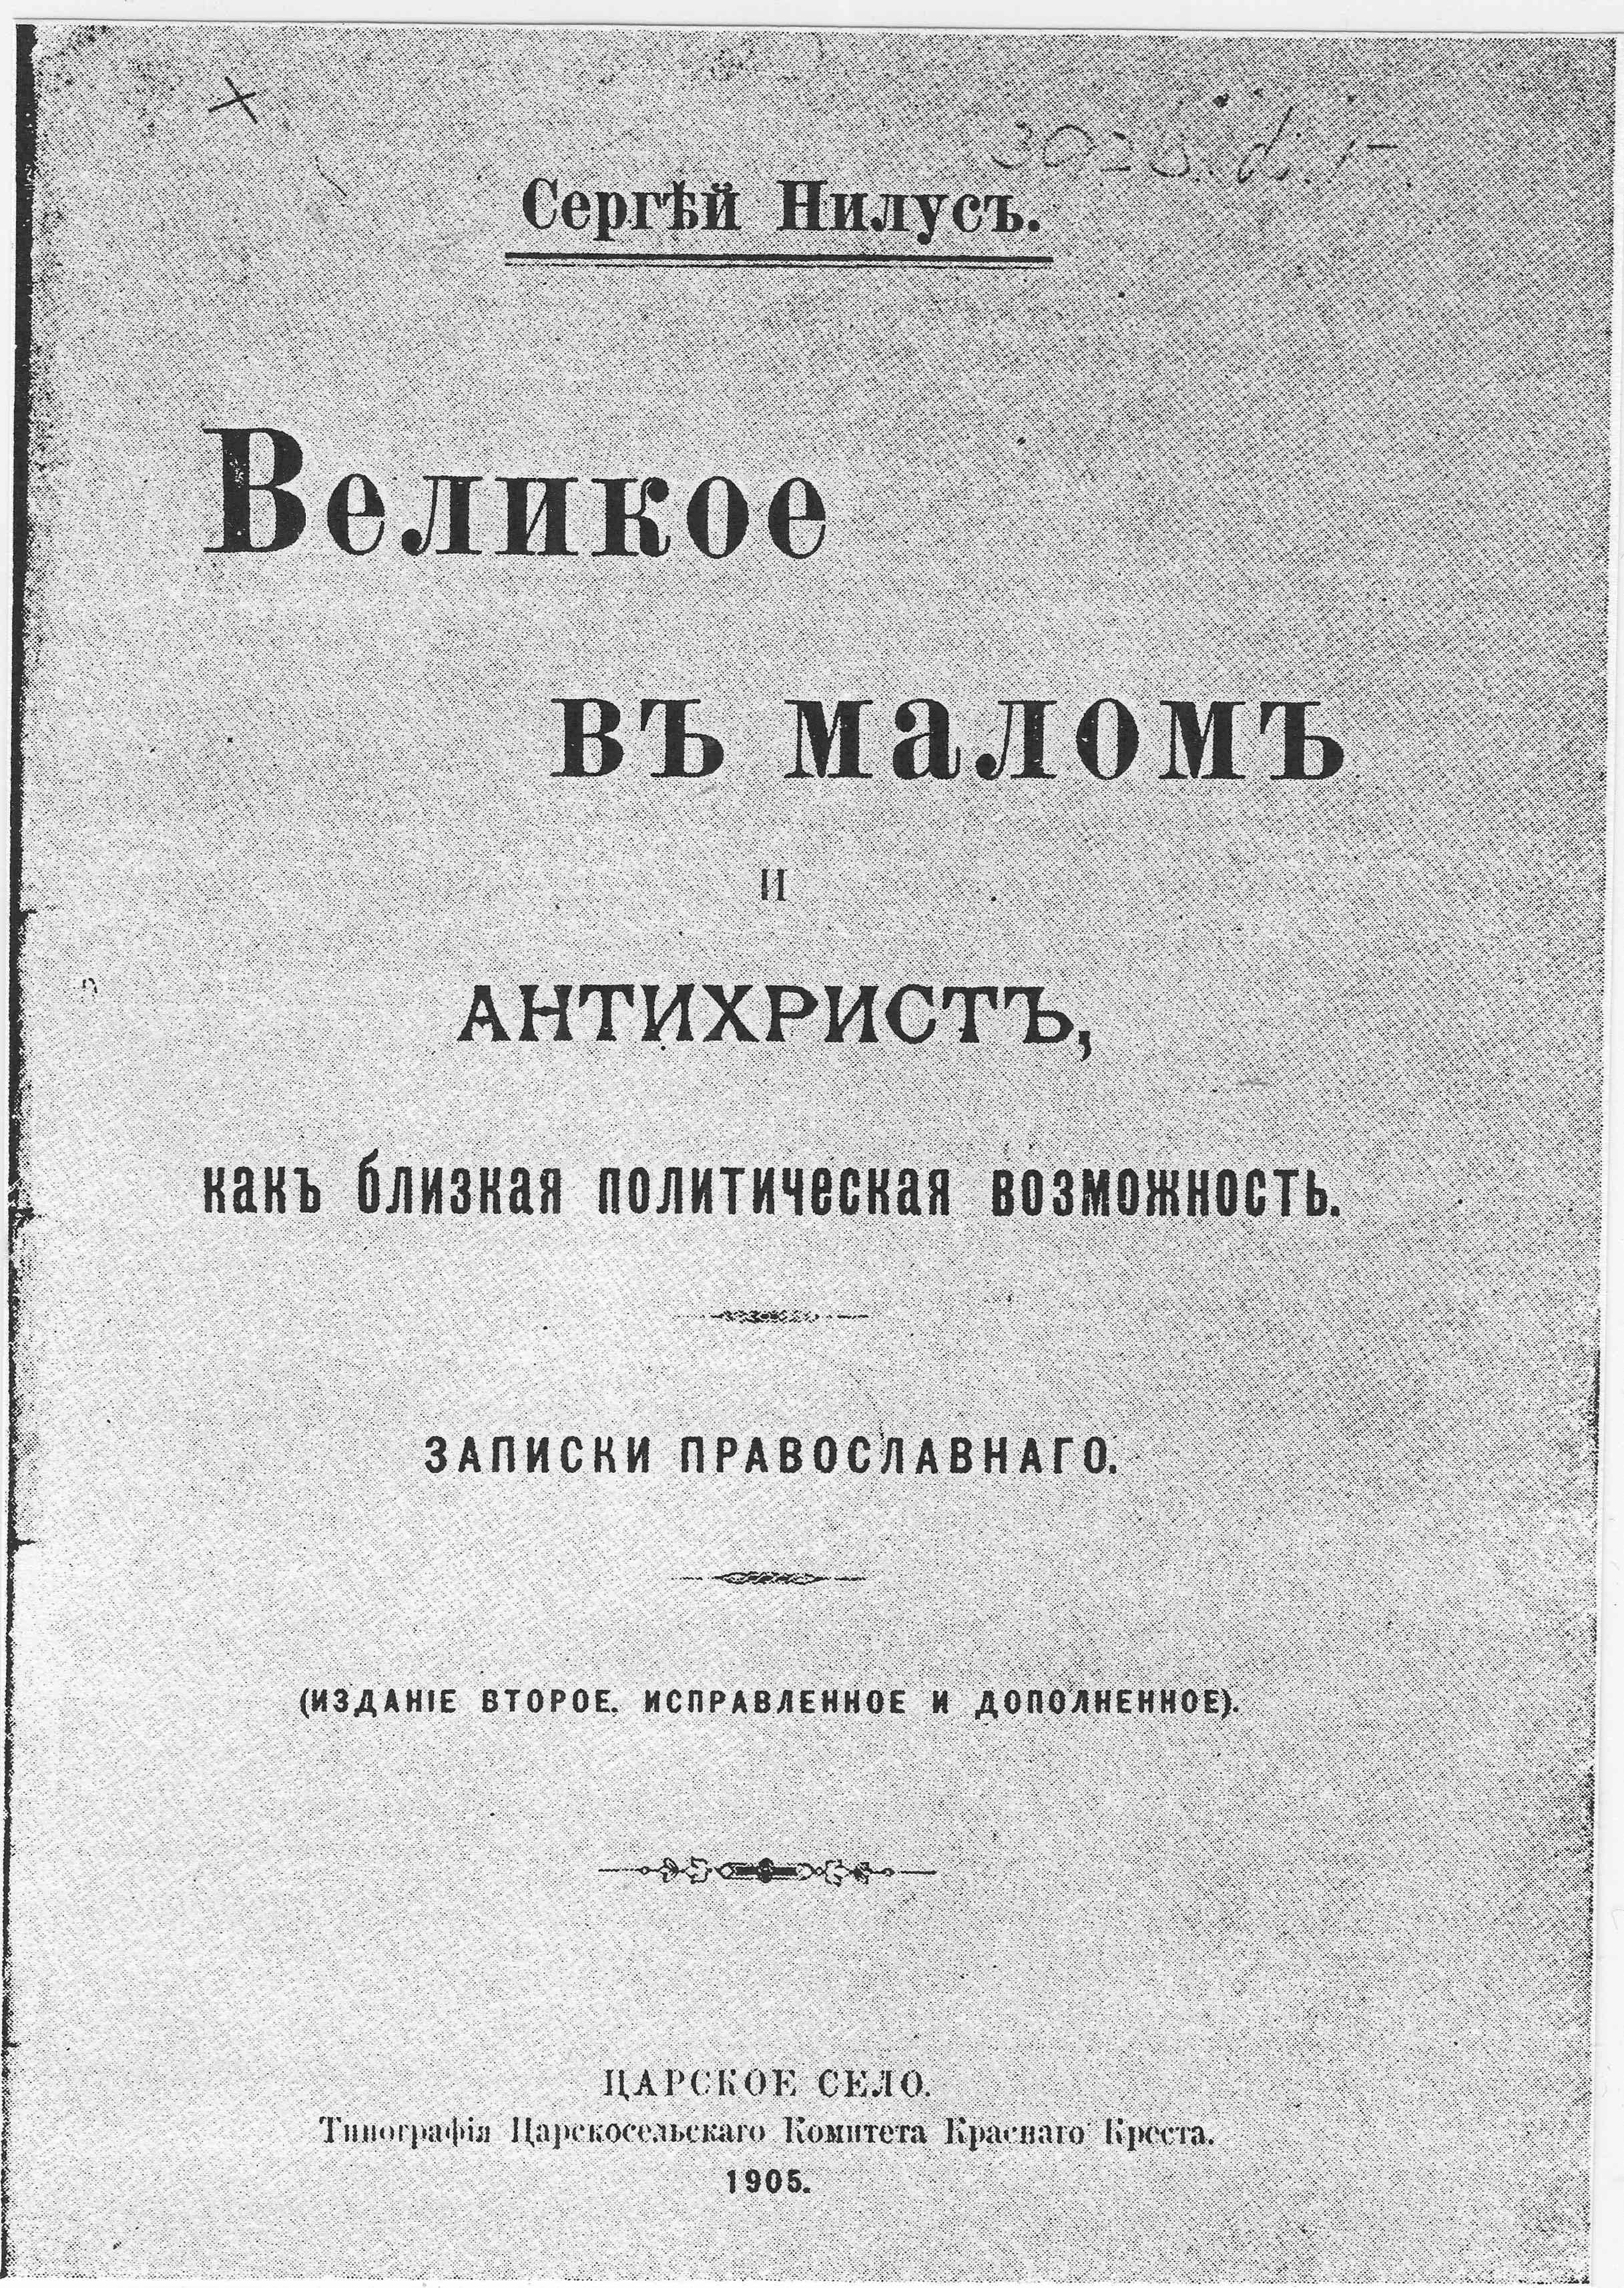 La 2ᵉ édition de 1905 du livre de Nilus Le Gran dans le Petit et l’Antéchrist - une possibilité        politique prochaine , intégrant les Protocoles